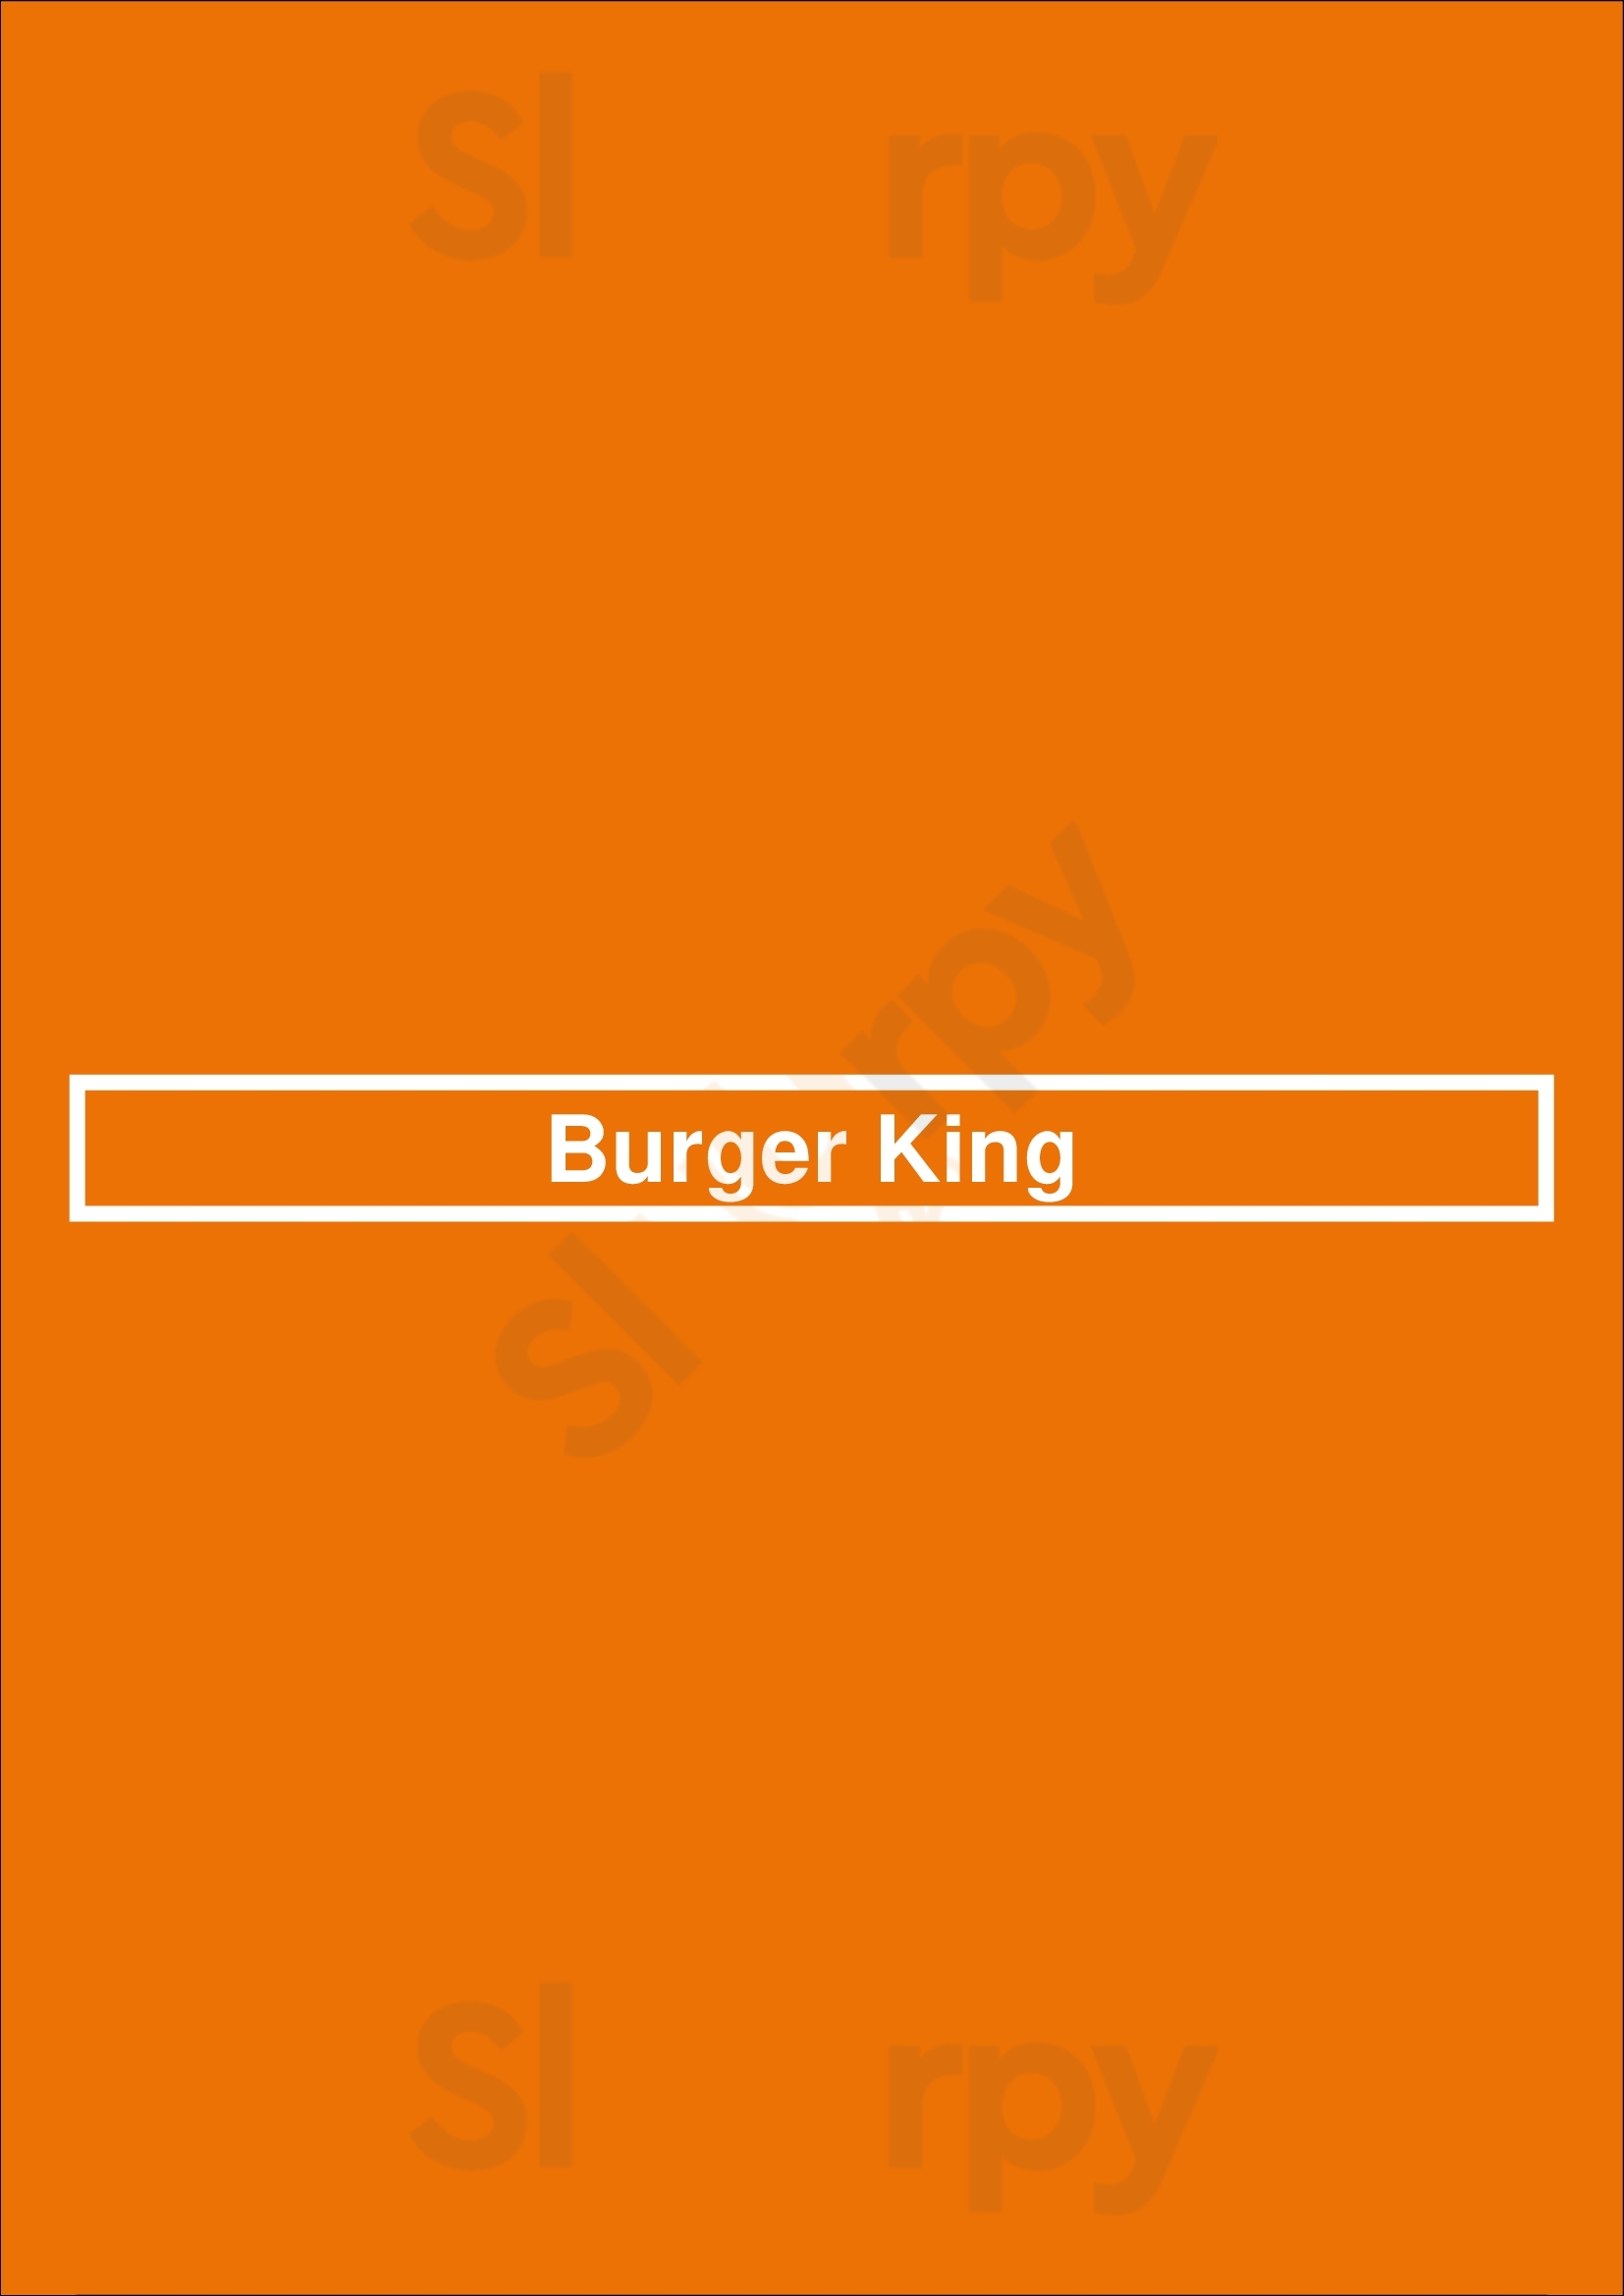 Burger King Fort Lauderdale Menu - 1